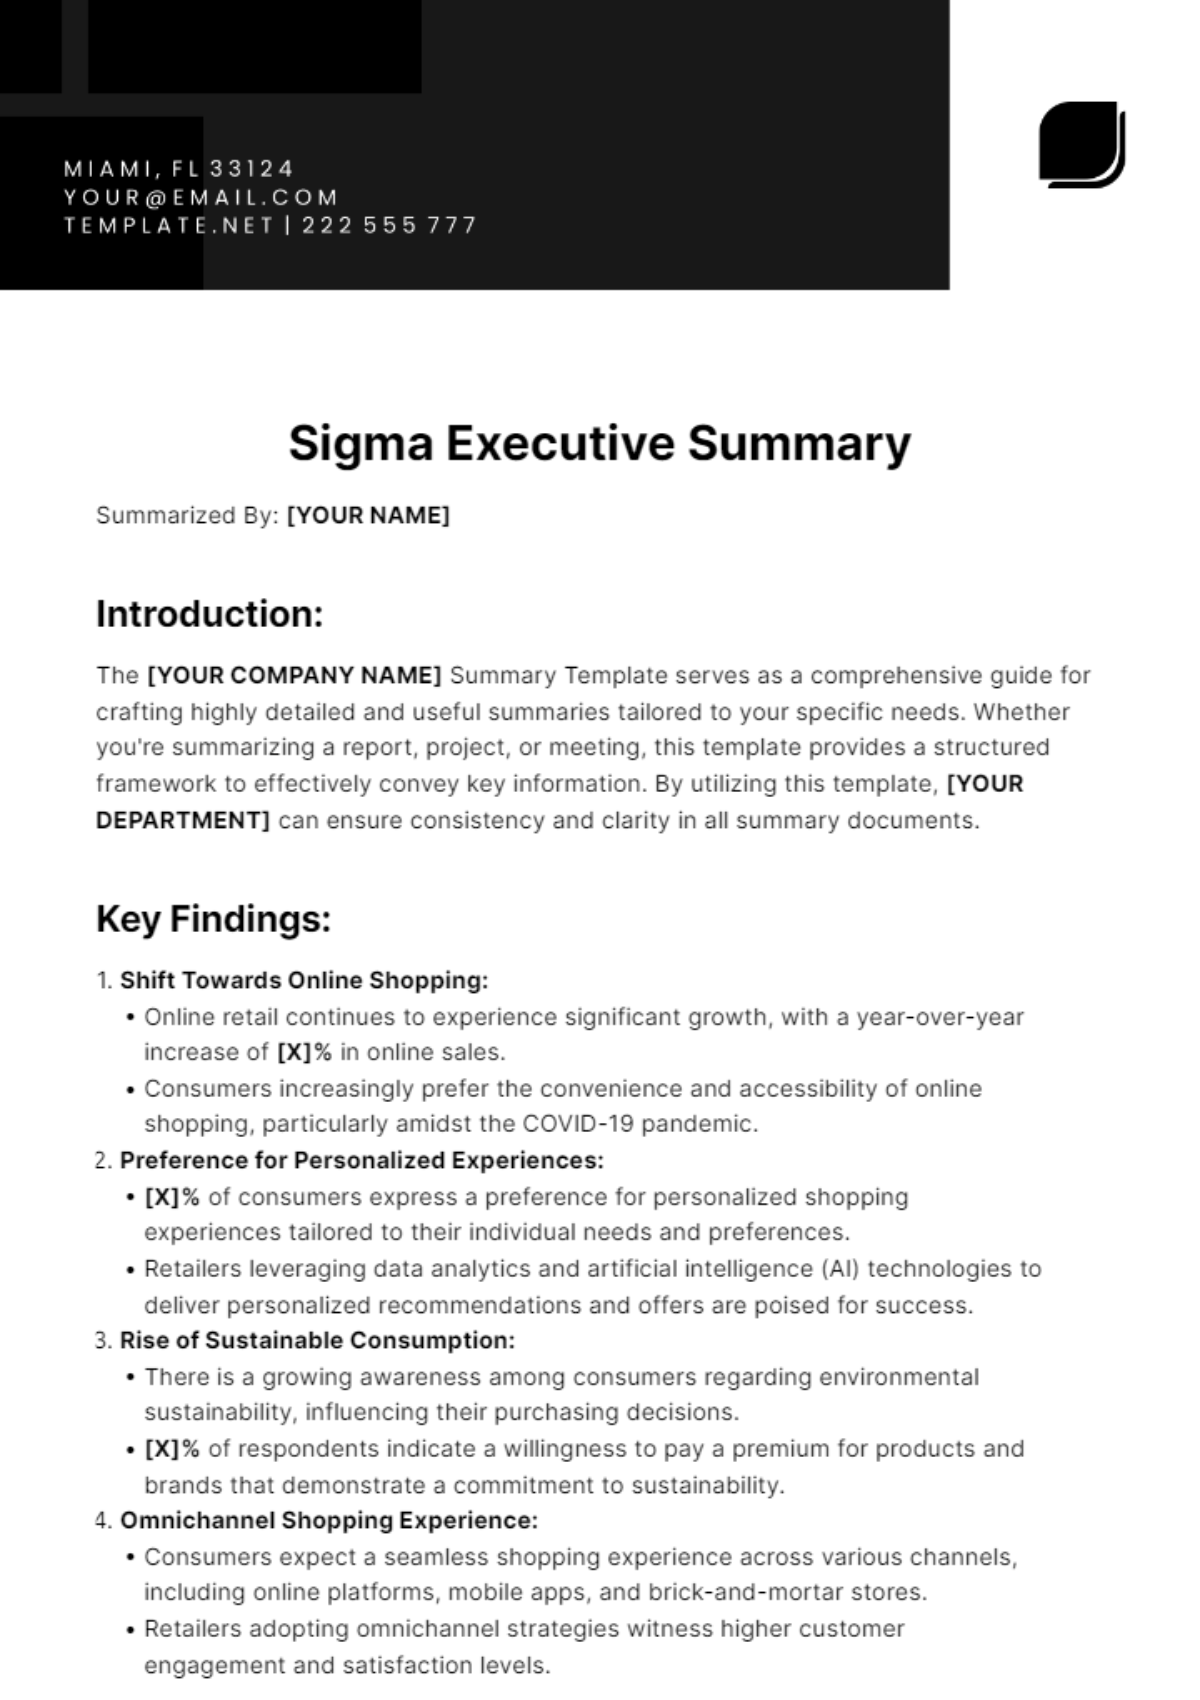 Sigma Executive Summary Template